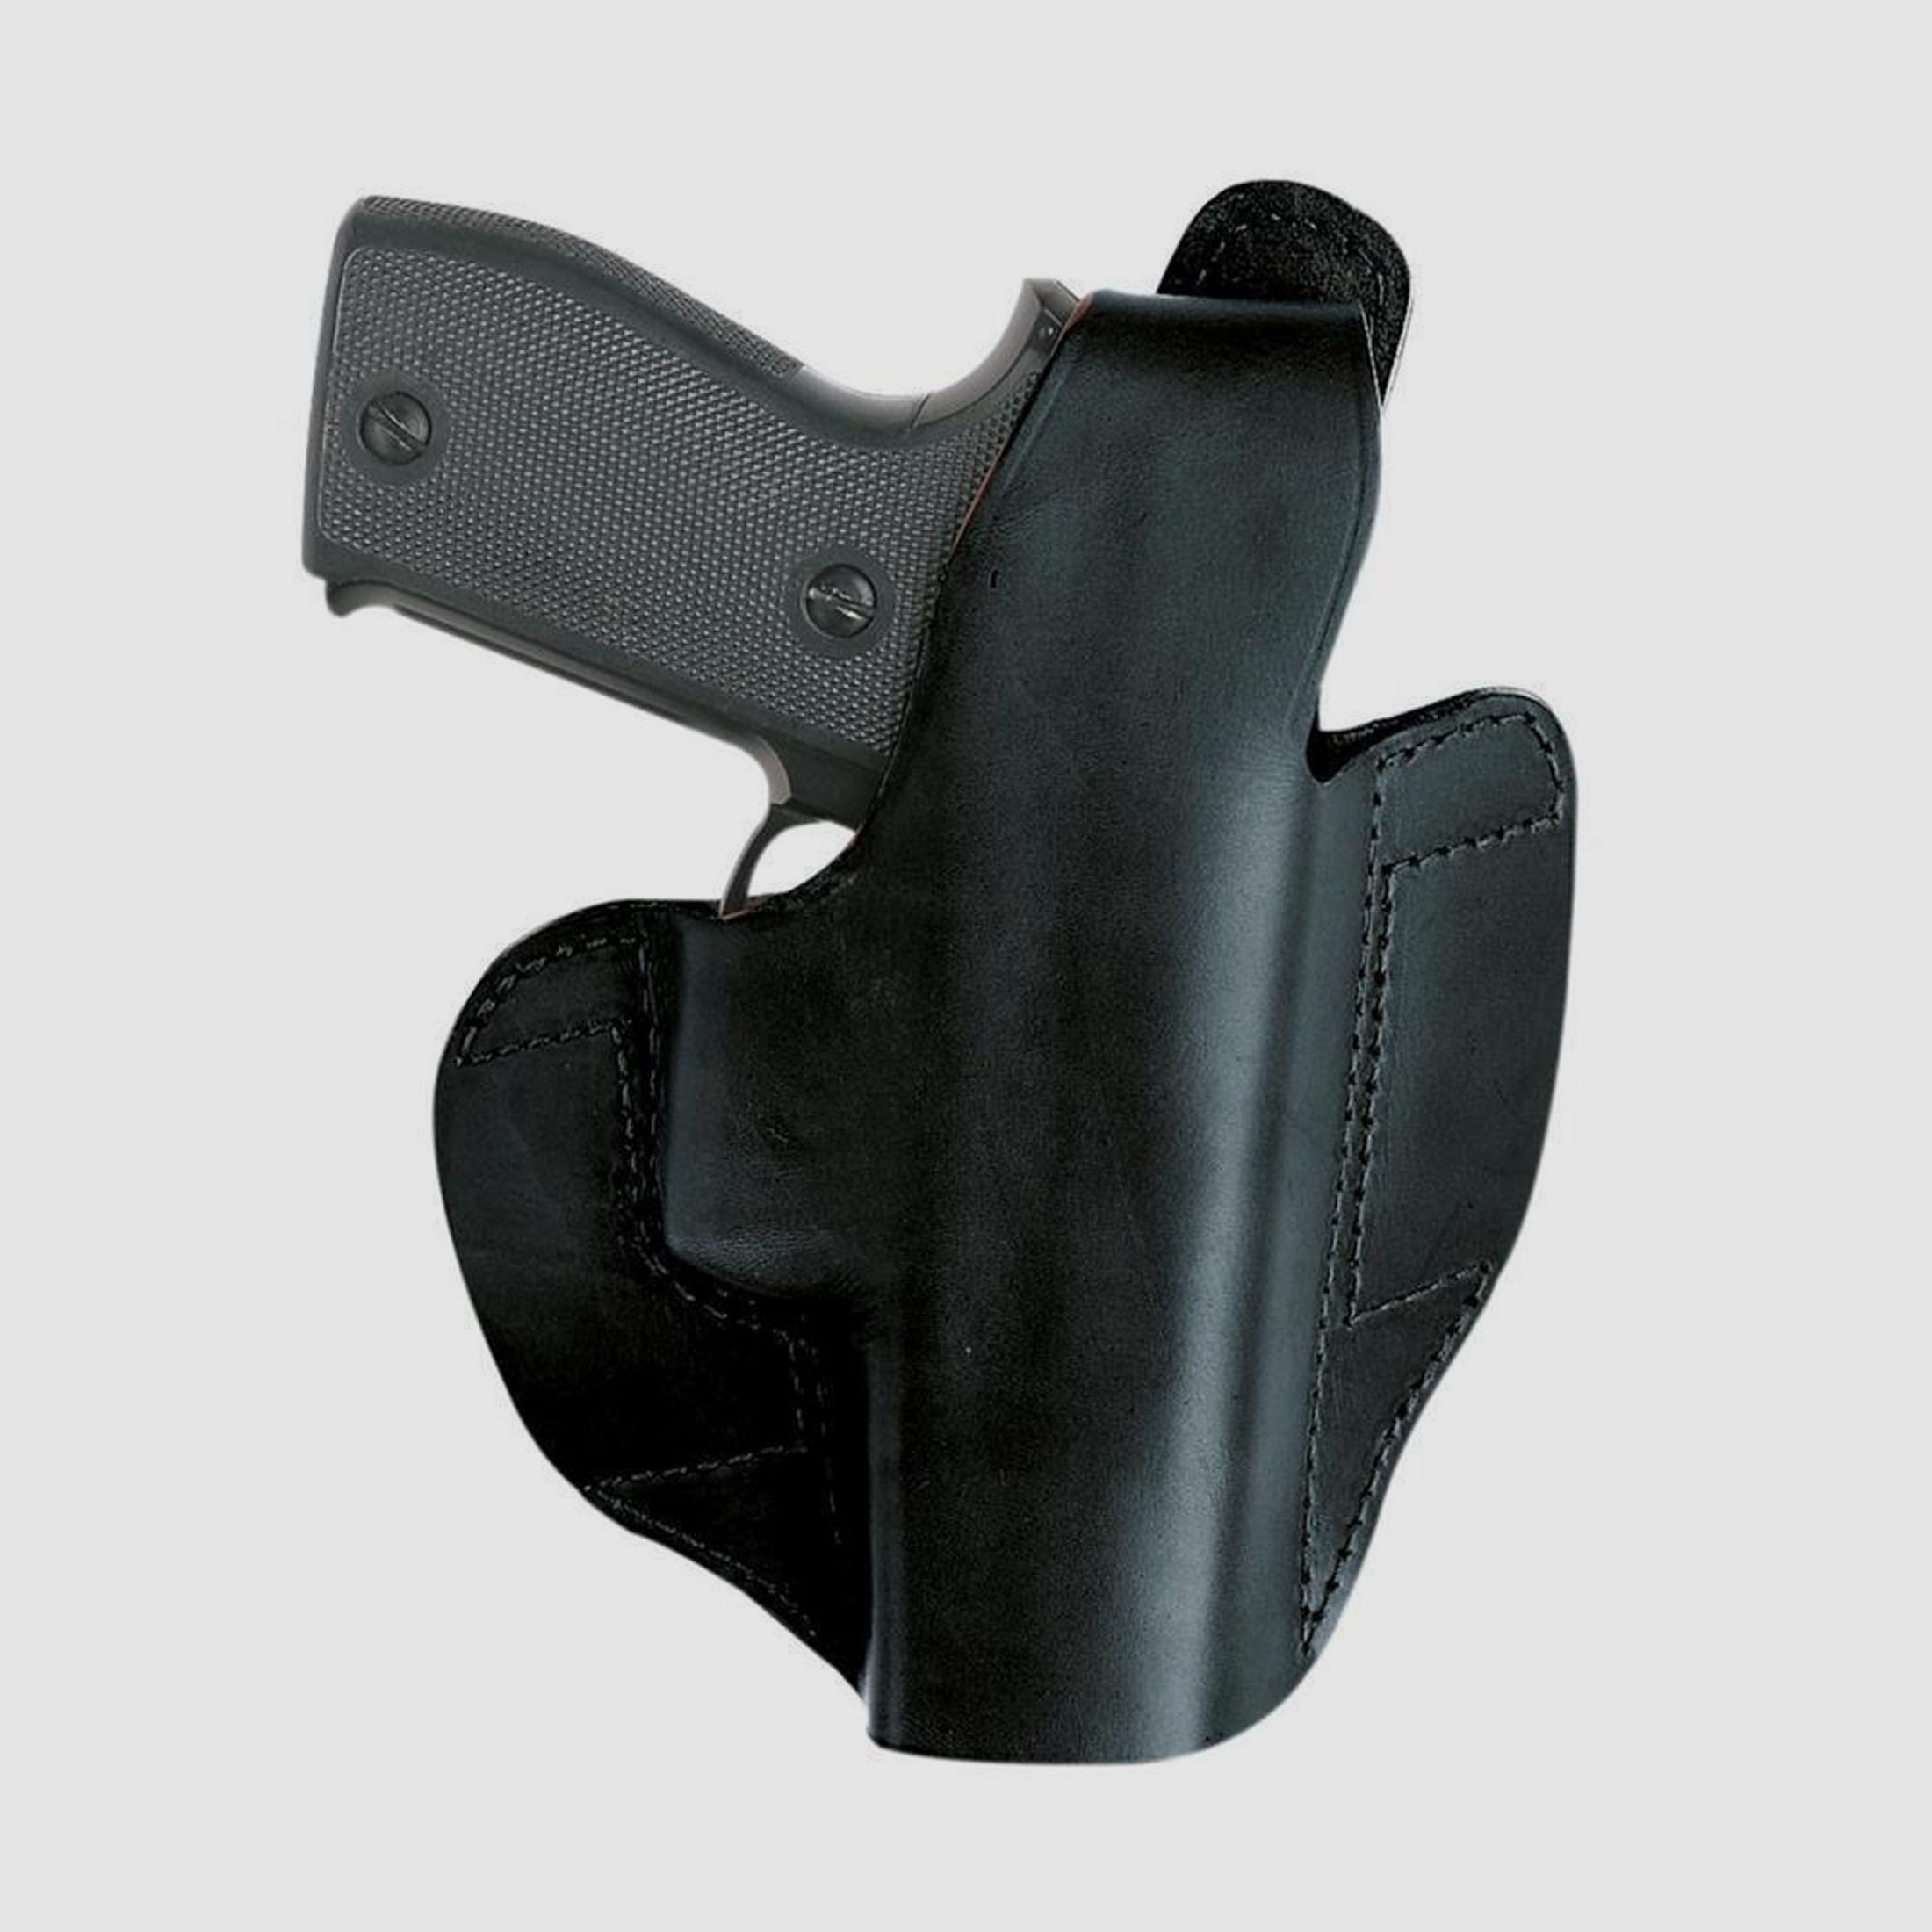 Gürtelholster QUICKFLAT für Pistole Rechtshänder-CZ P-07, Walther P99 / DAO / Compact